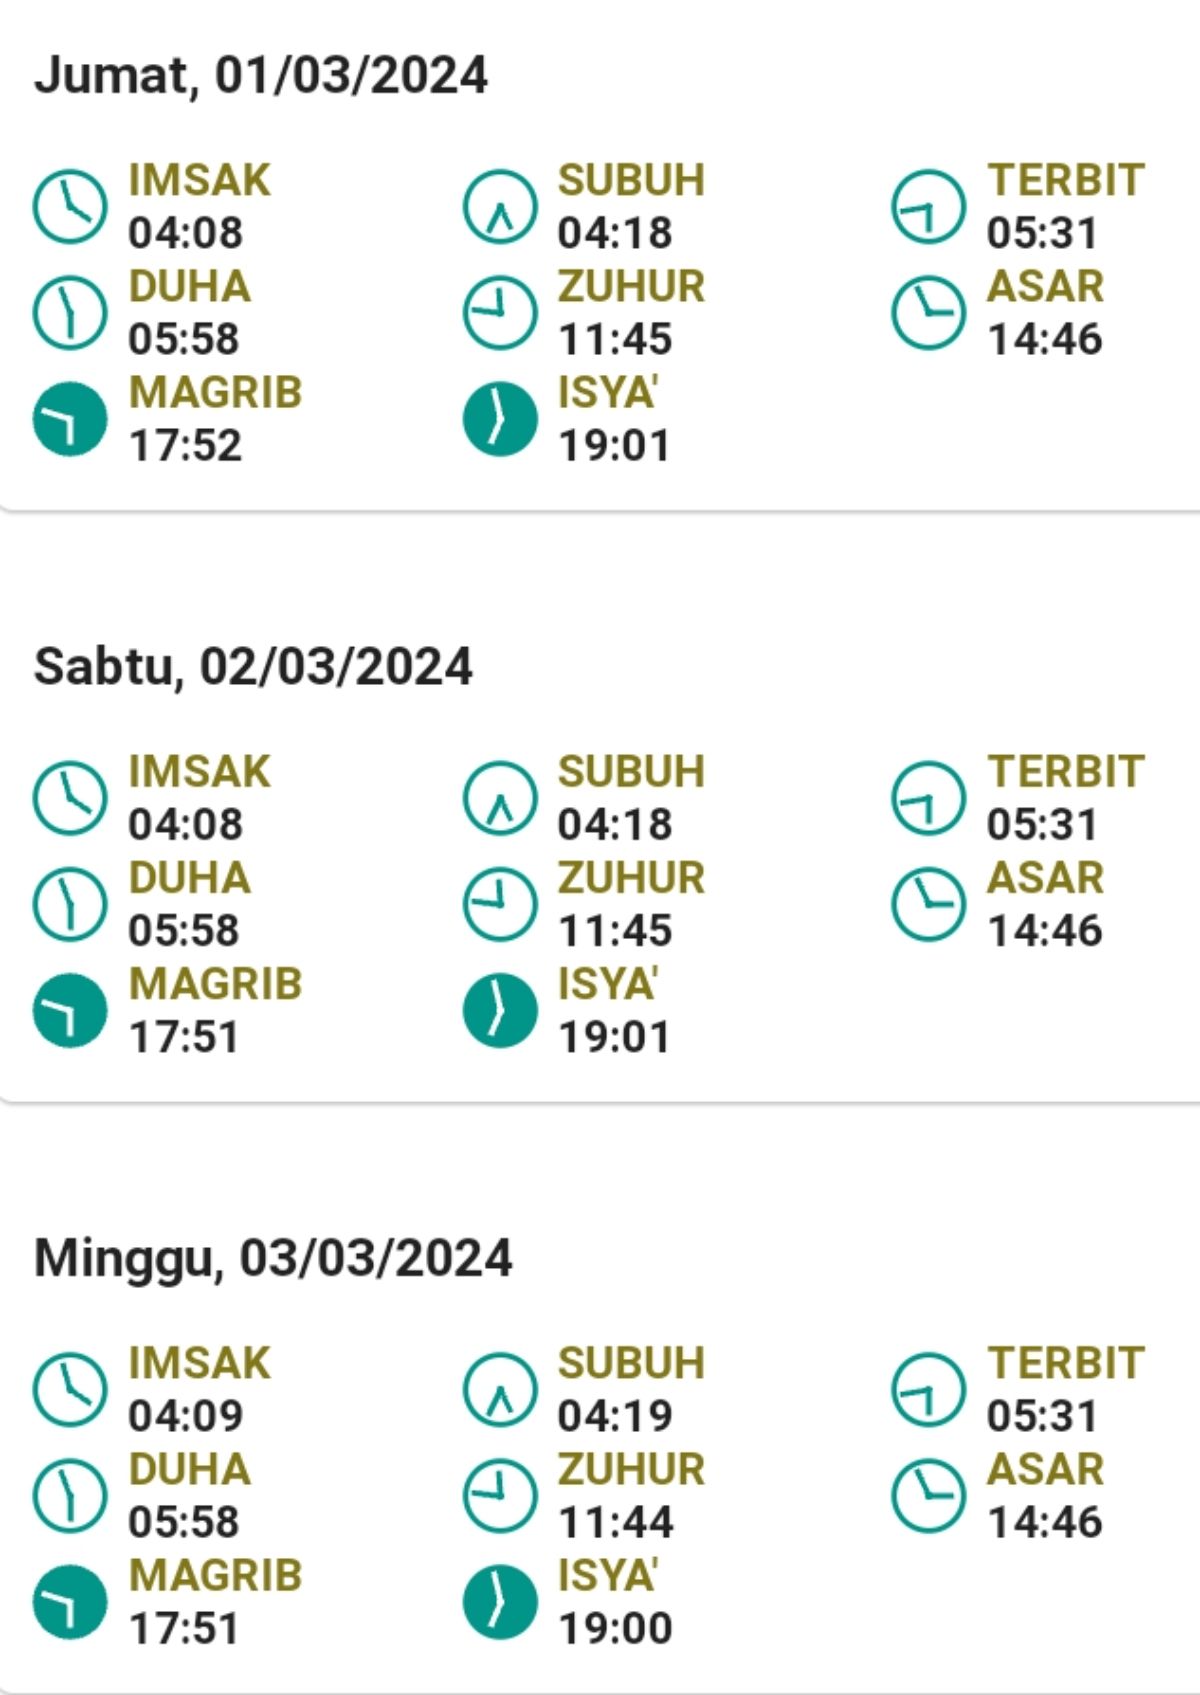 Tangkapan layar jadwal sholat menurut bimas islam kemenag RI